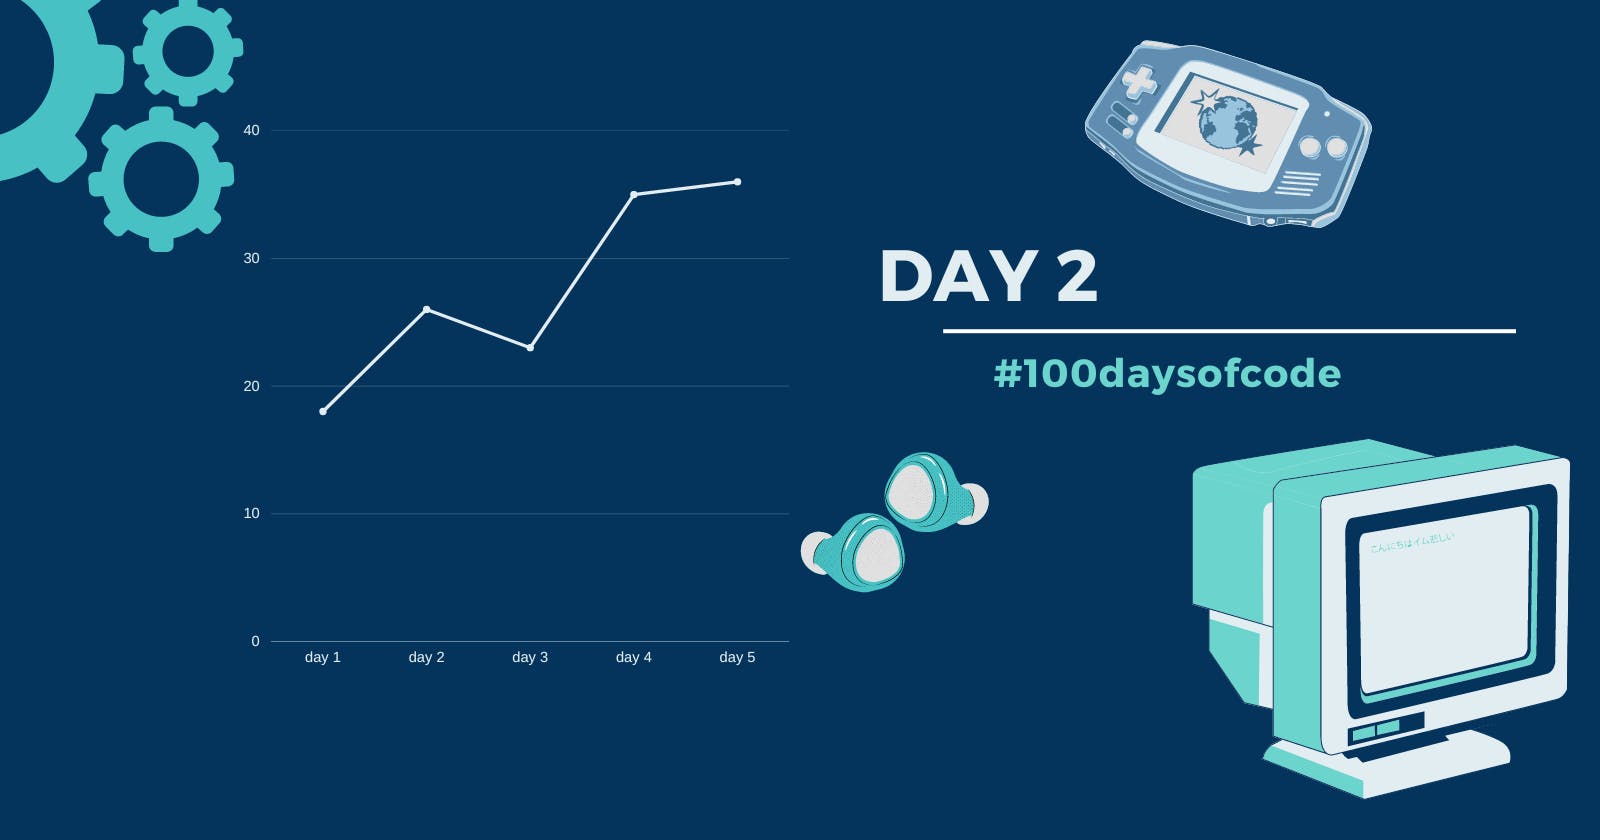 Day 2 in #100daysofcode challenge